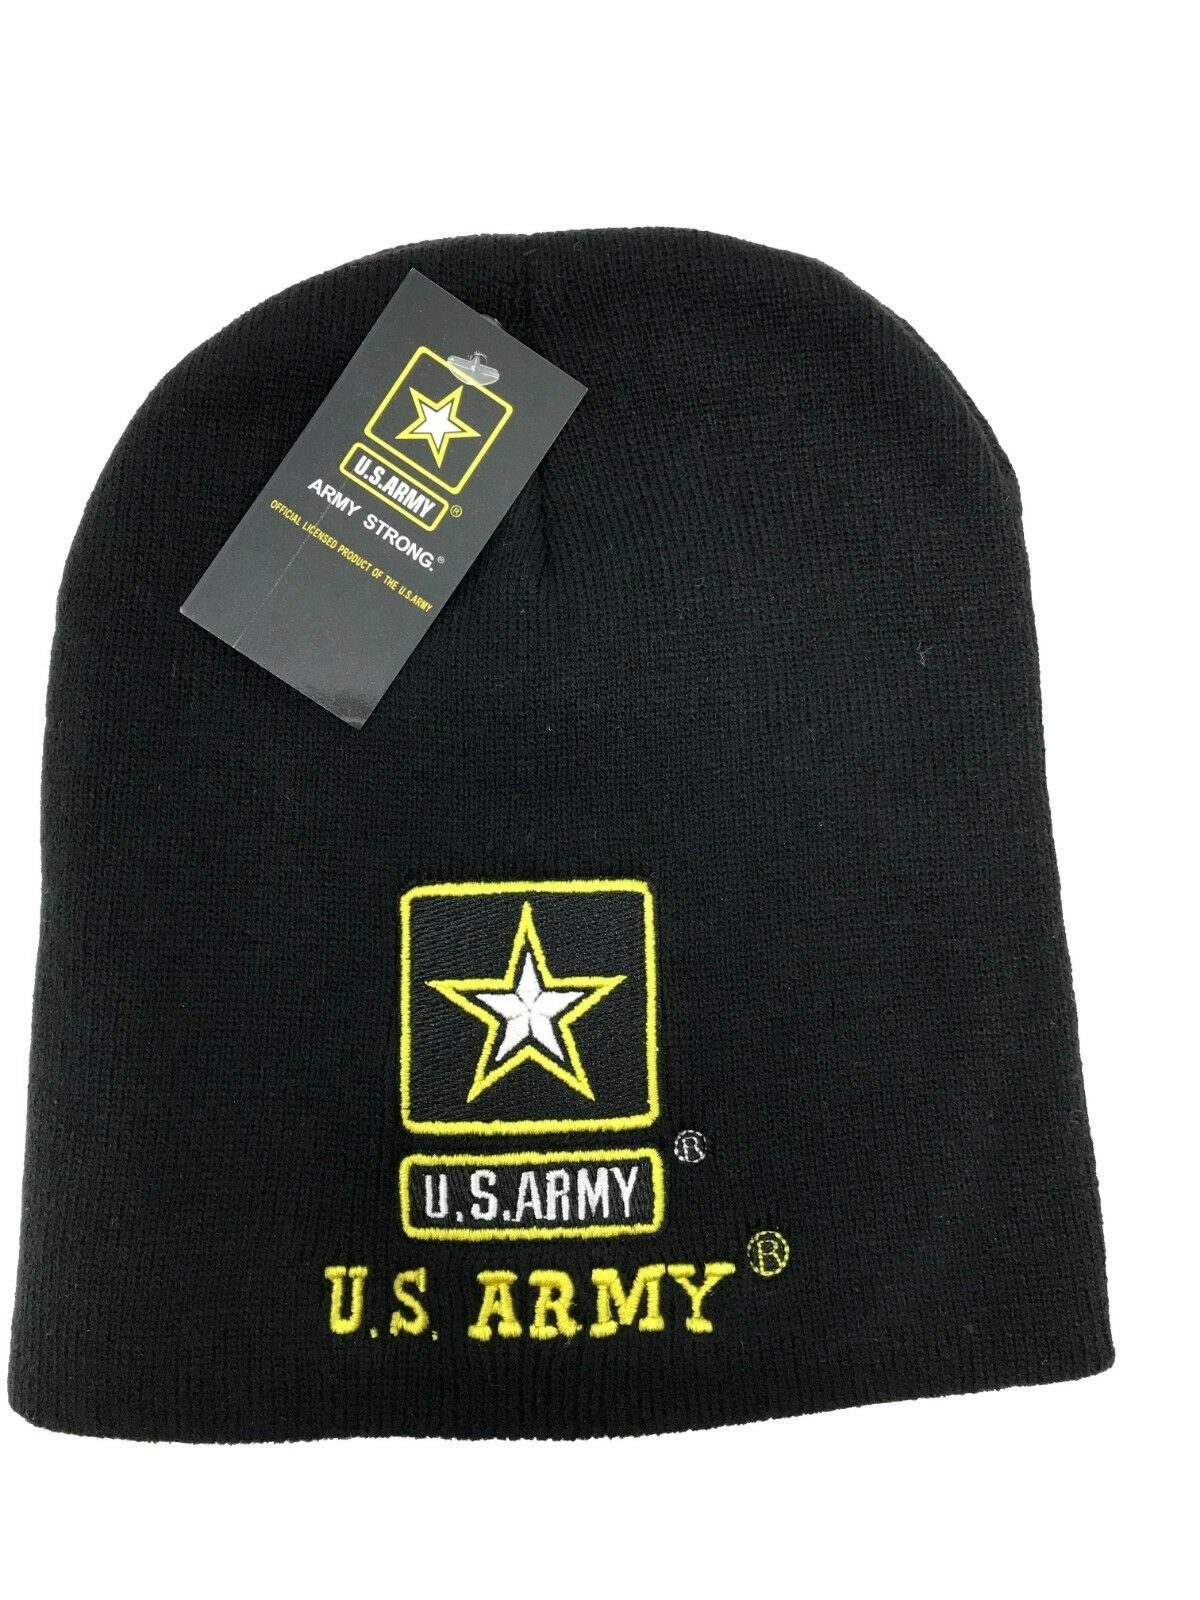 Military BEANIE - U.S. ARMY w/Star Logo